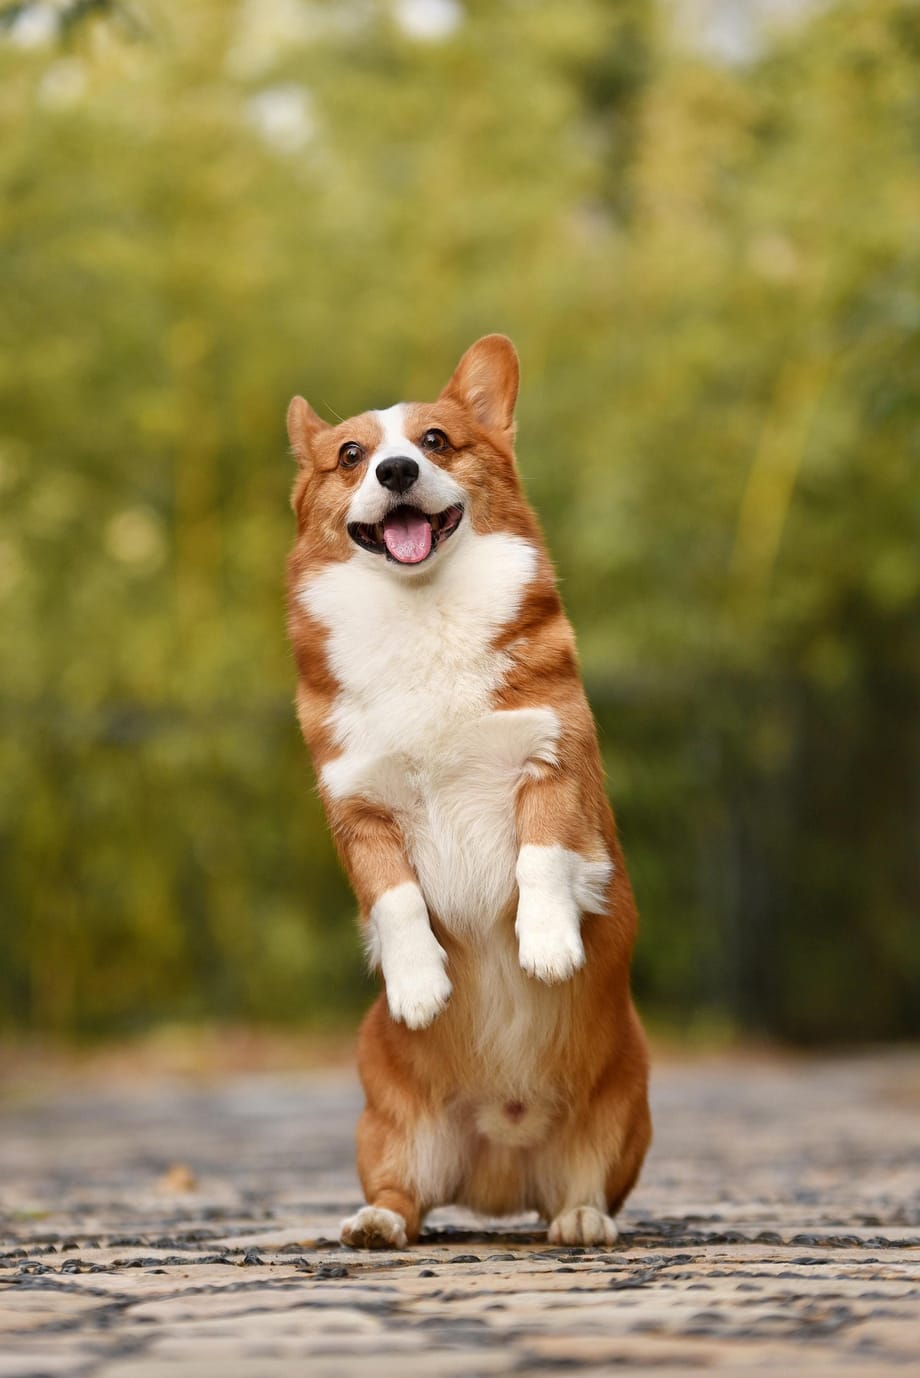 Un perro se para con las patas delanteras levantadas y sonríe